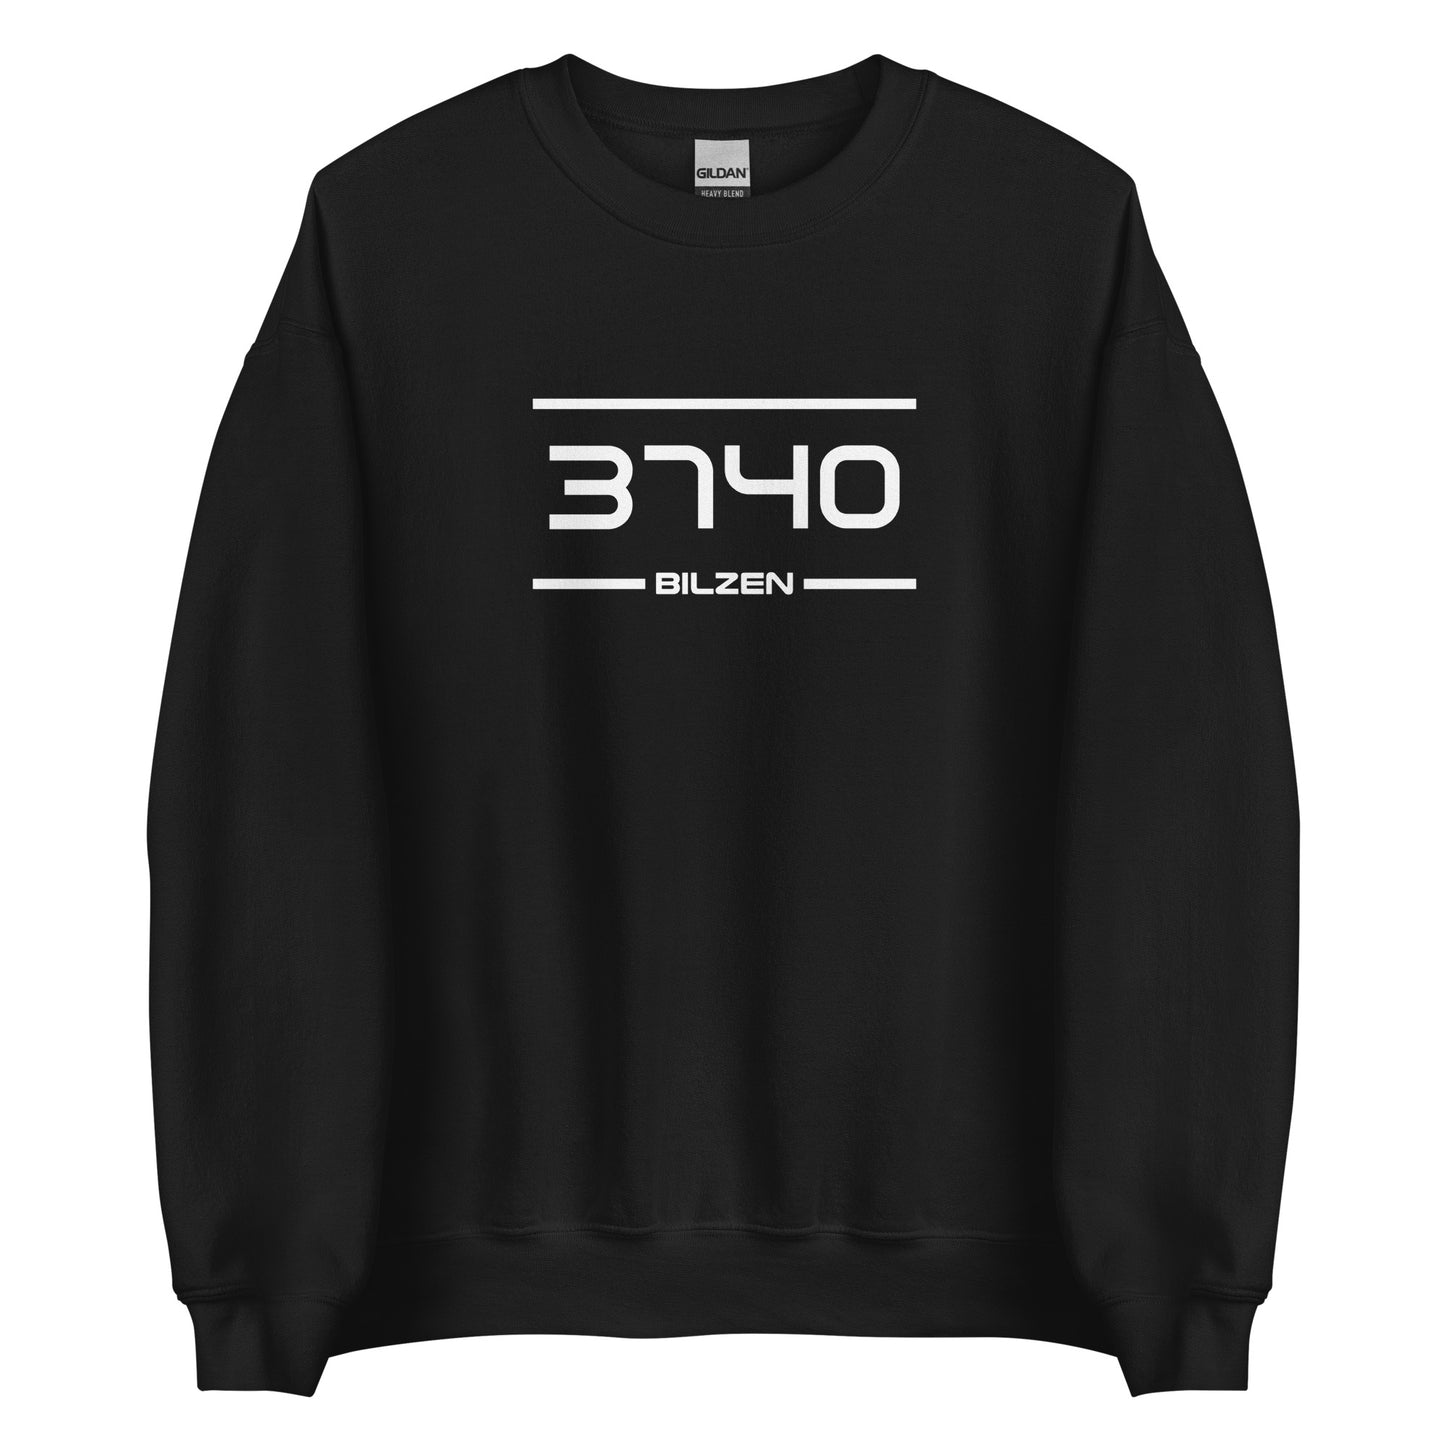 Sweater - 3740 - Bilzen (M/V)